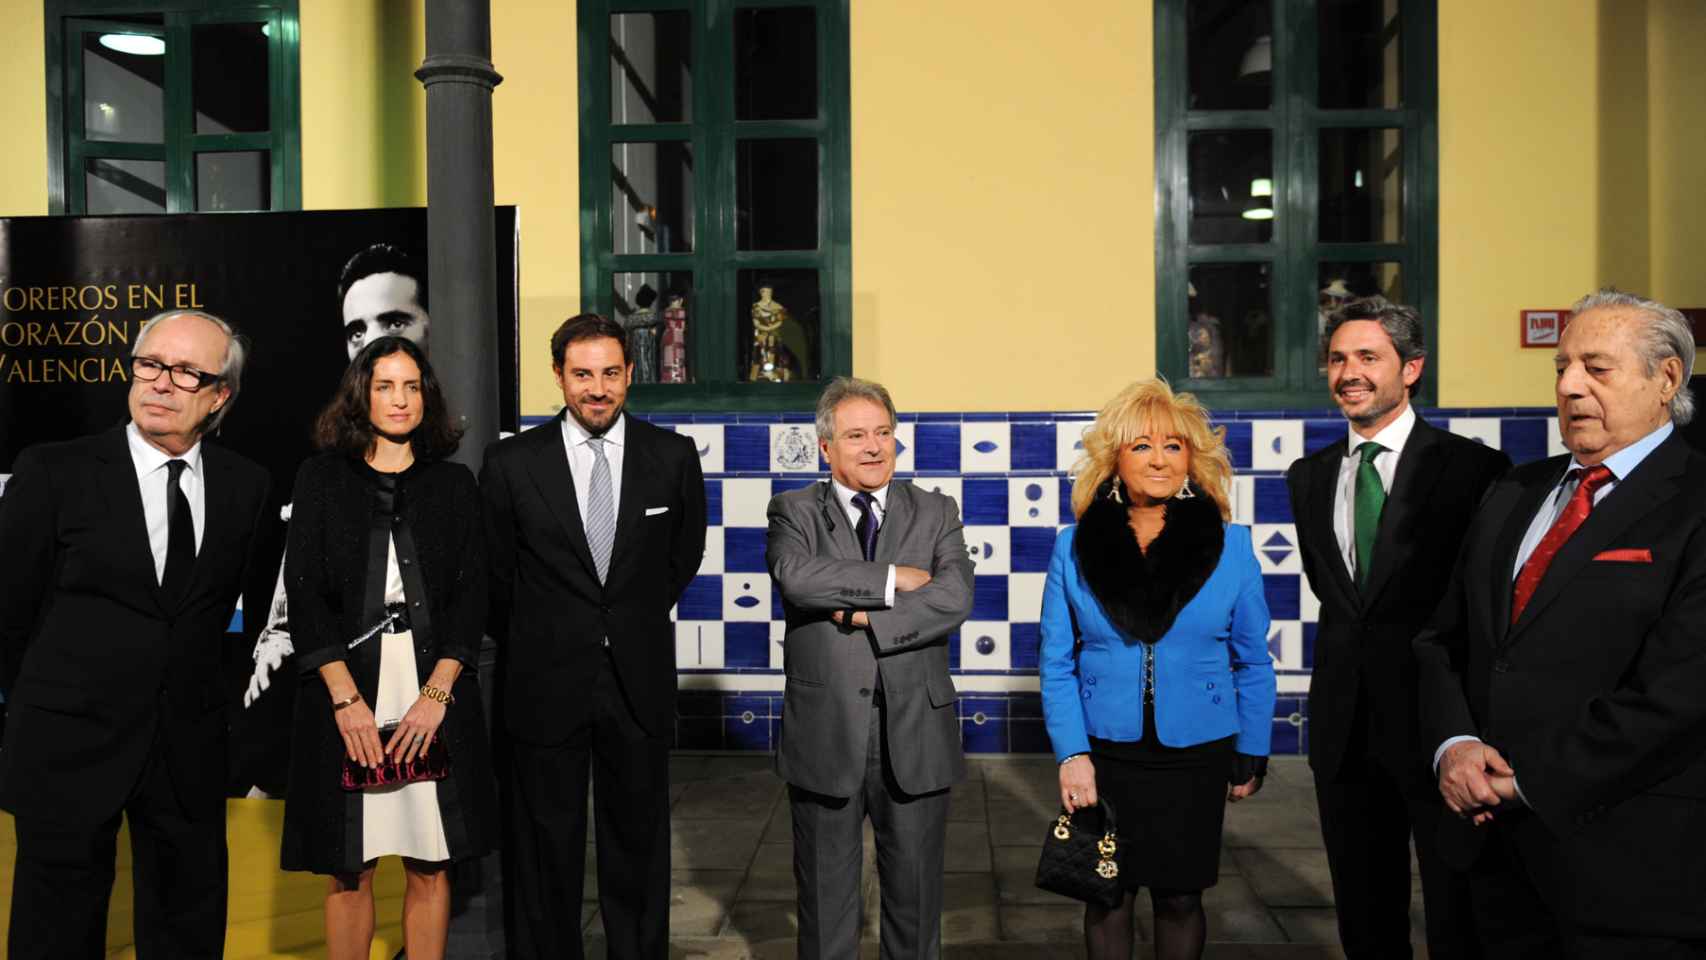 Begoña y su marido con el Litri y su mujer Carolina Herrera en un acto público